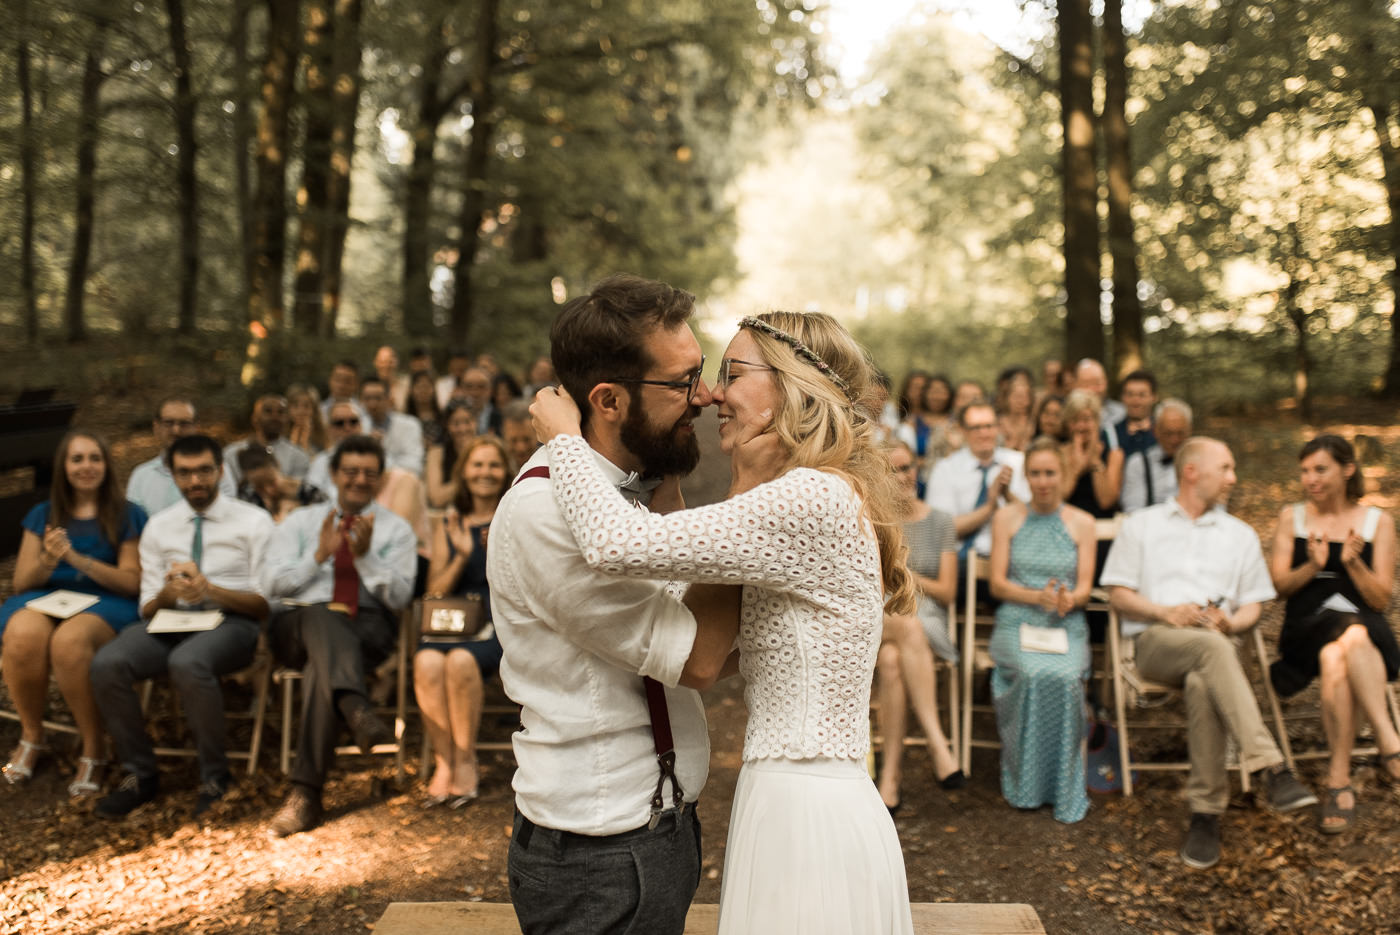 Brautpaar küsst sich bei Trauung vor Hochzeitsgesellschaft in Wald bei grüner Hochzeit und ist glücklich